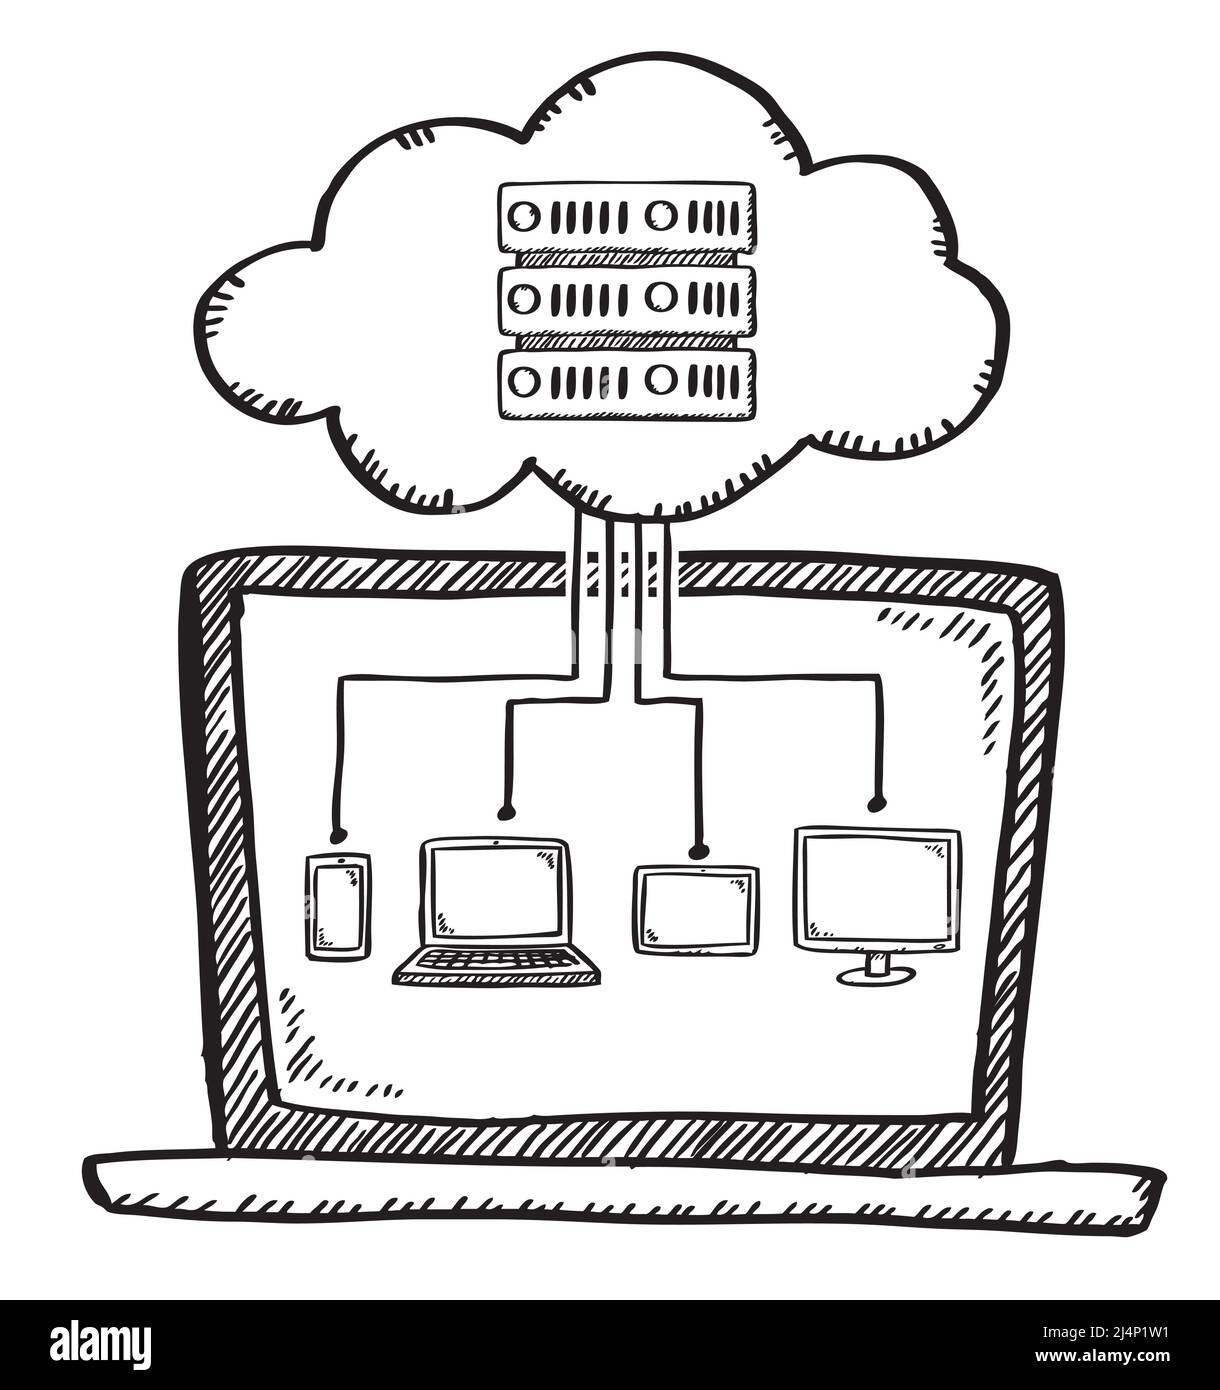 Cartoon-Stil Doodle von Notebook, Smartphone, Tablet, Fernseher durch Cloud-Server verbunden Stock Vektor